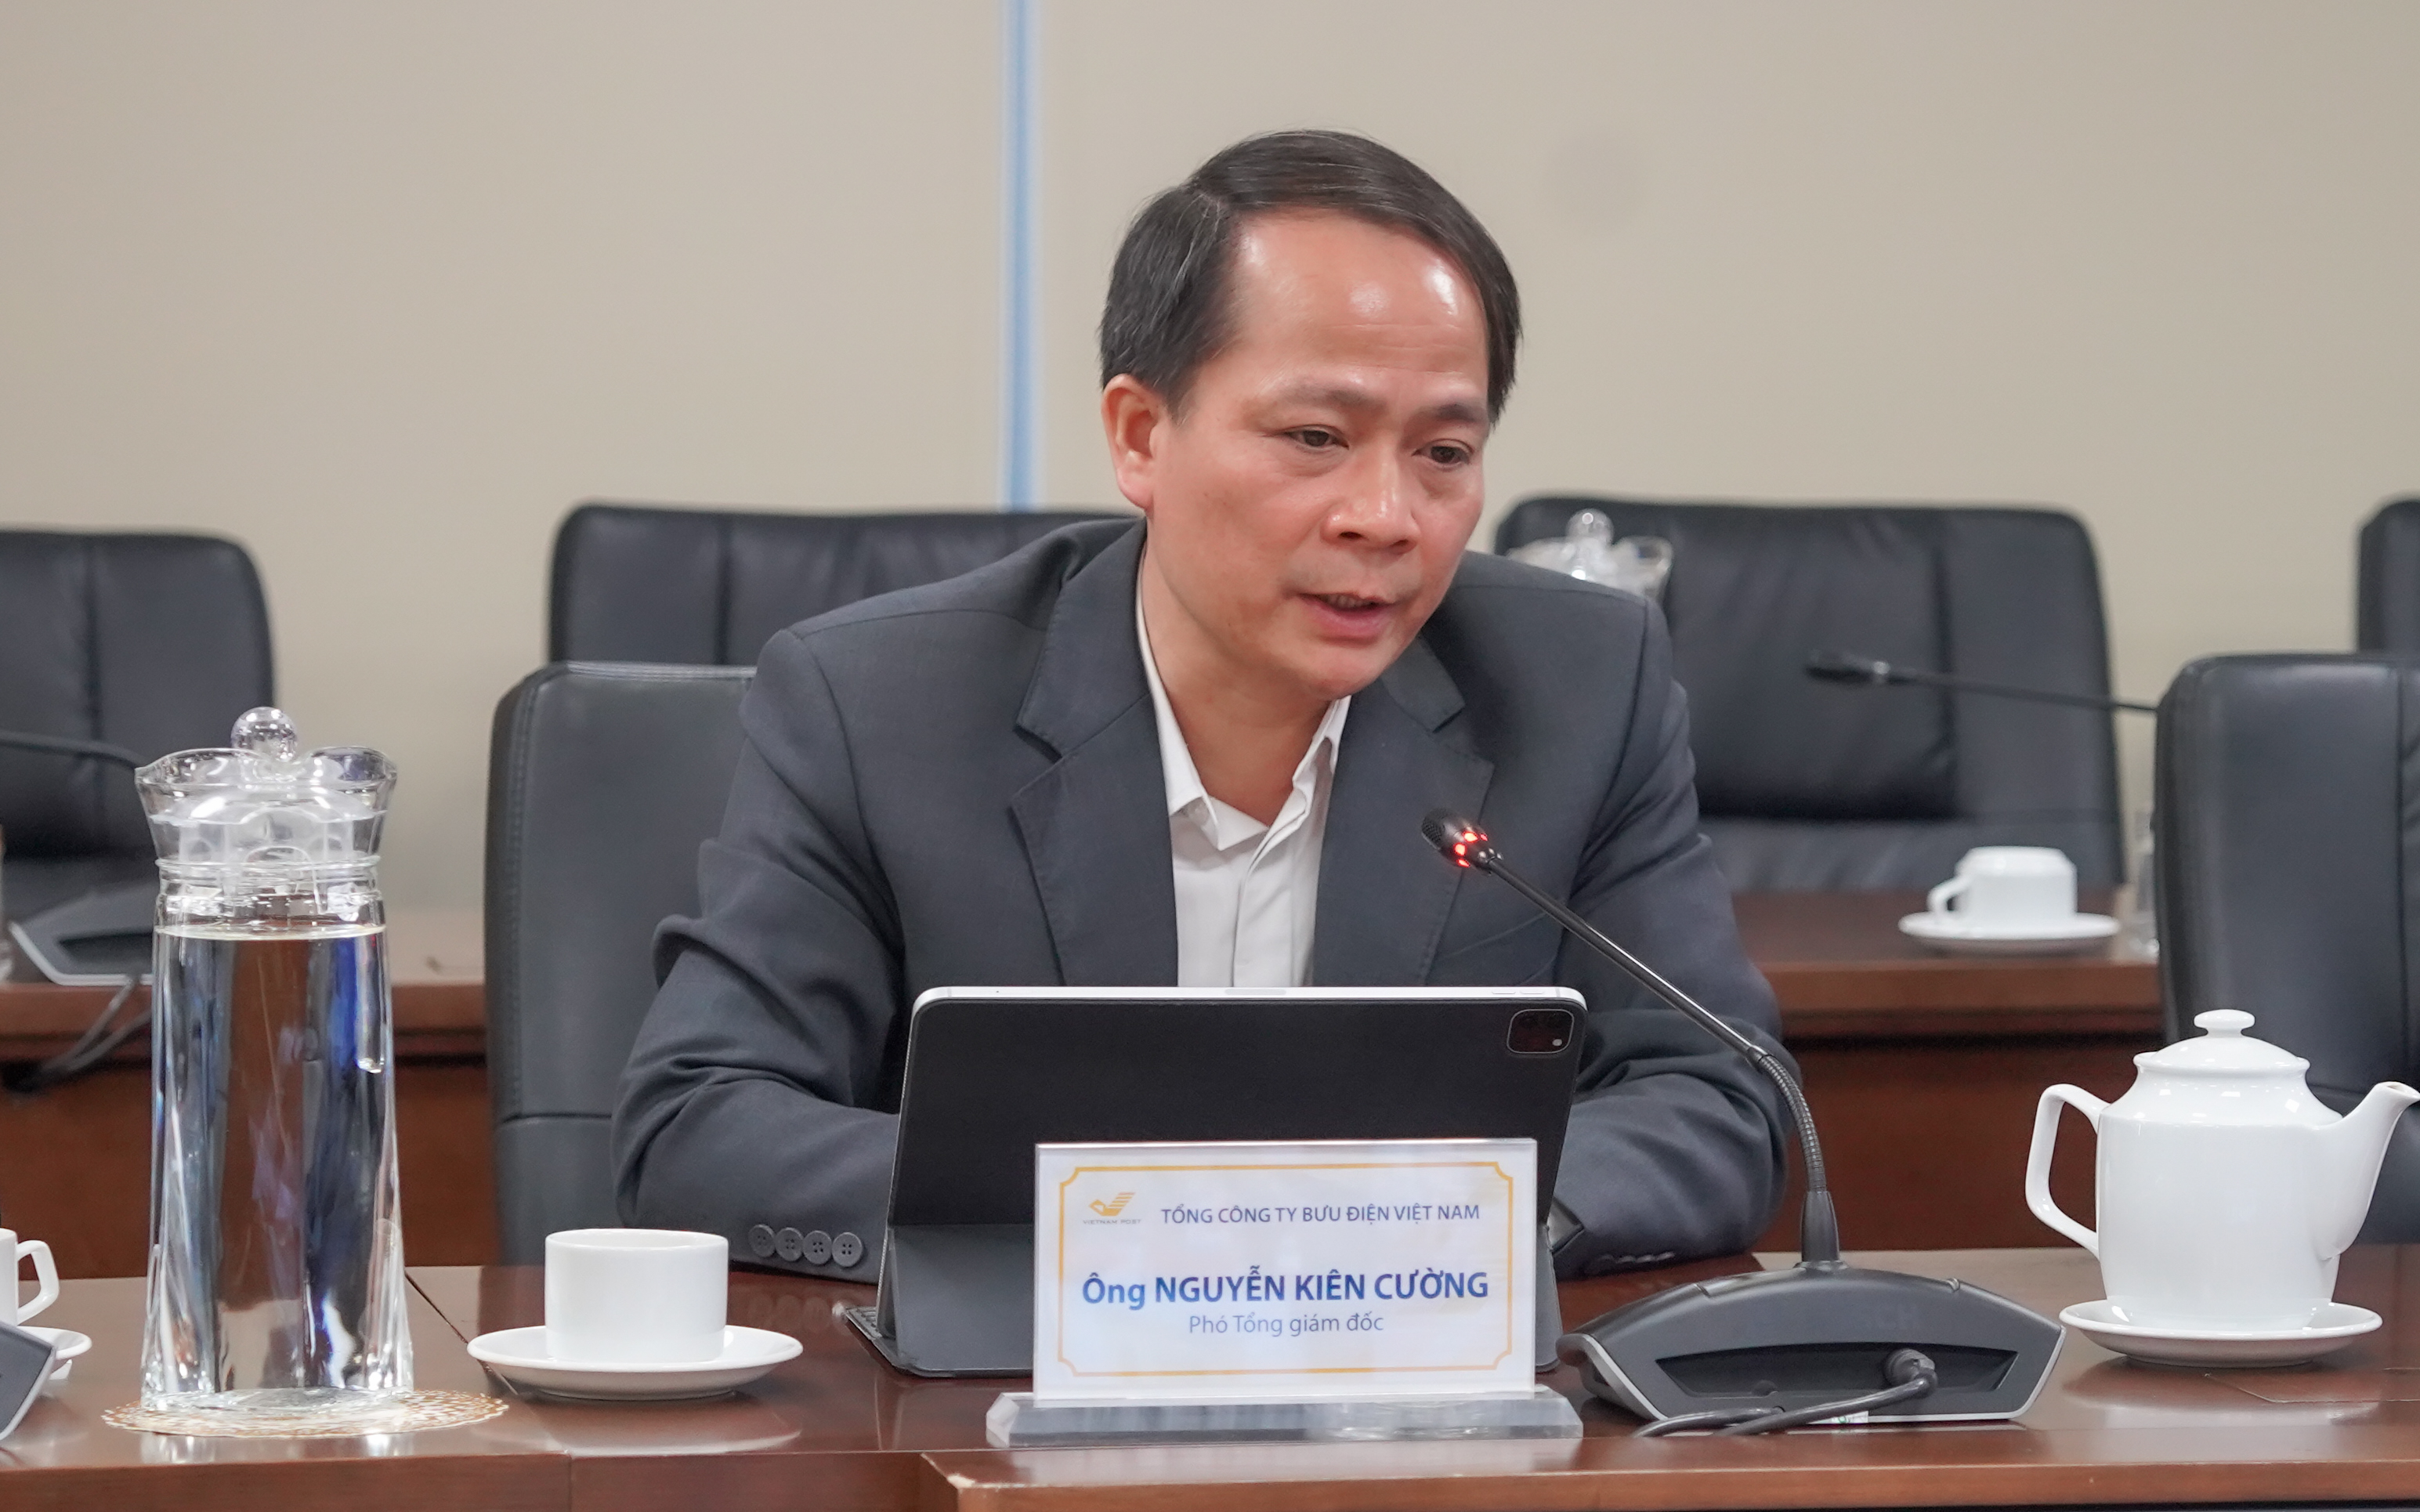 Ông Nguyễn Kiên Cường, Phó Tổng giám đốc Tổng công ty Bưu điện Việt Nam, phát biểu tại buổi tập huấn.